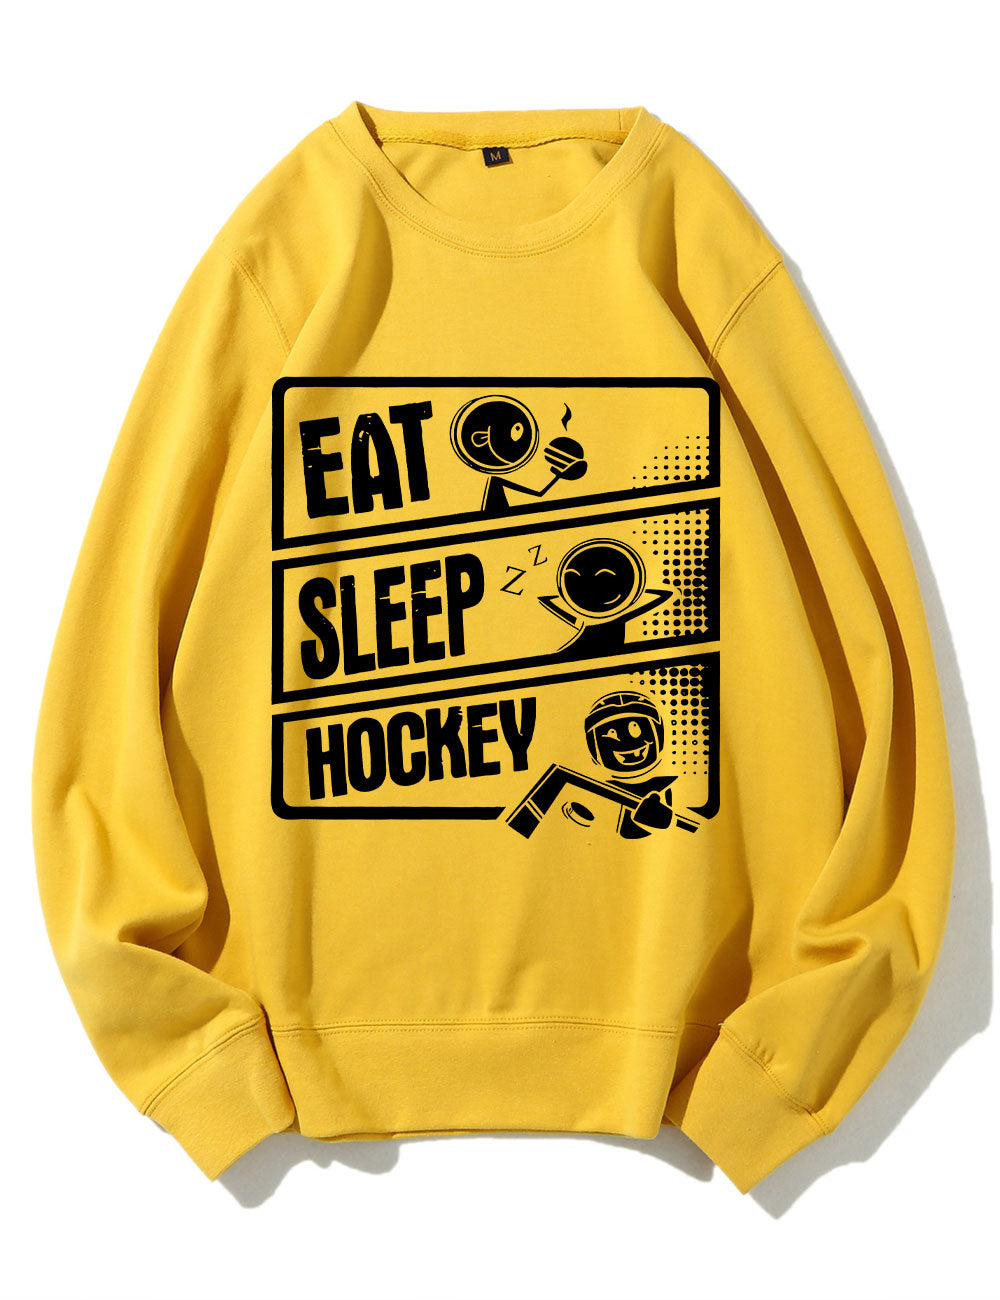 Eat Sleep Hockey Sweatshirt